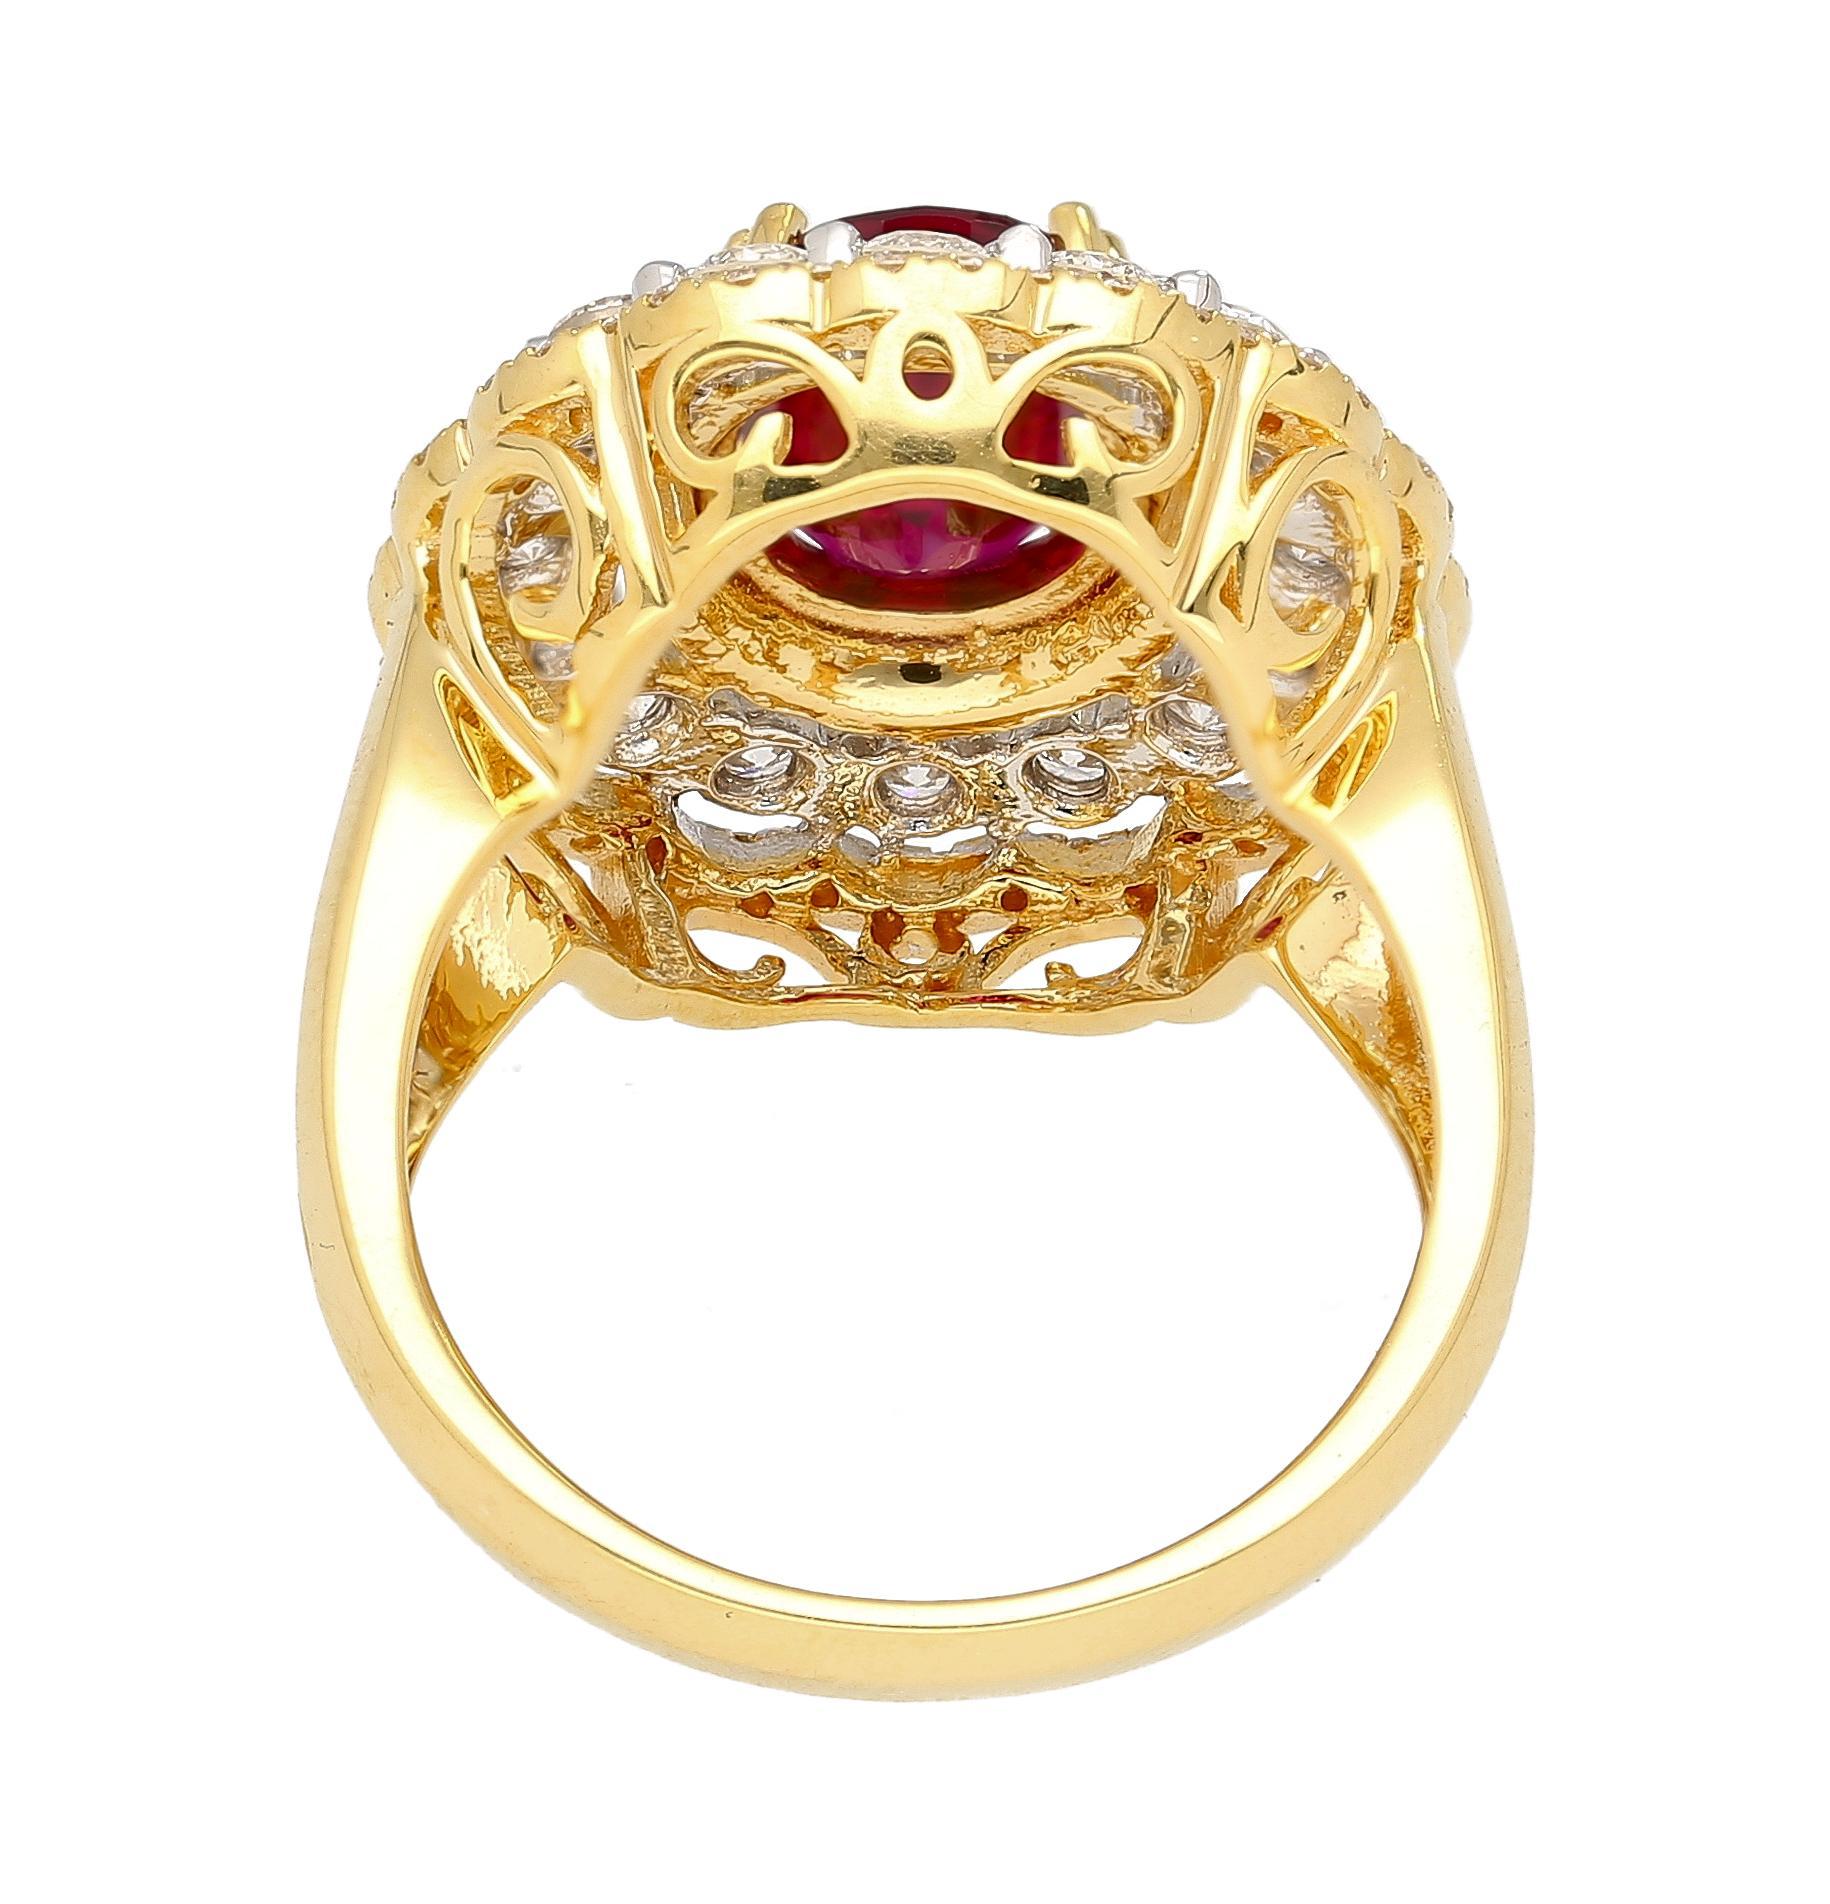 GRS zertifiziert 2,58 Karat Oval Cut Thai Rubin mit Diamant Drei Ringe von Round Cut Diamond Halo in zwei Tone 18k Gold. Retro-inspiriertes Design, Vintage-Ringfassung. 

16 natürliche Diamanten im Rundschliff von insgesamt 0,91 Karat und 70